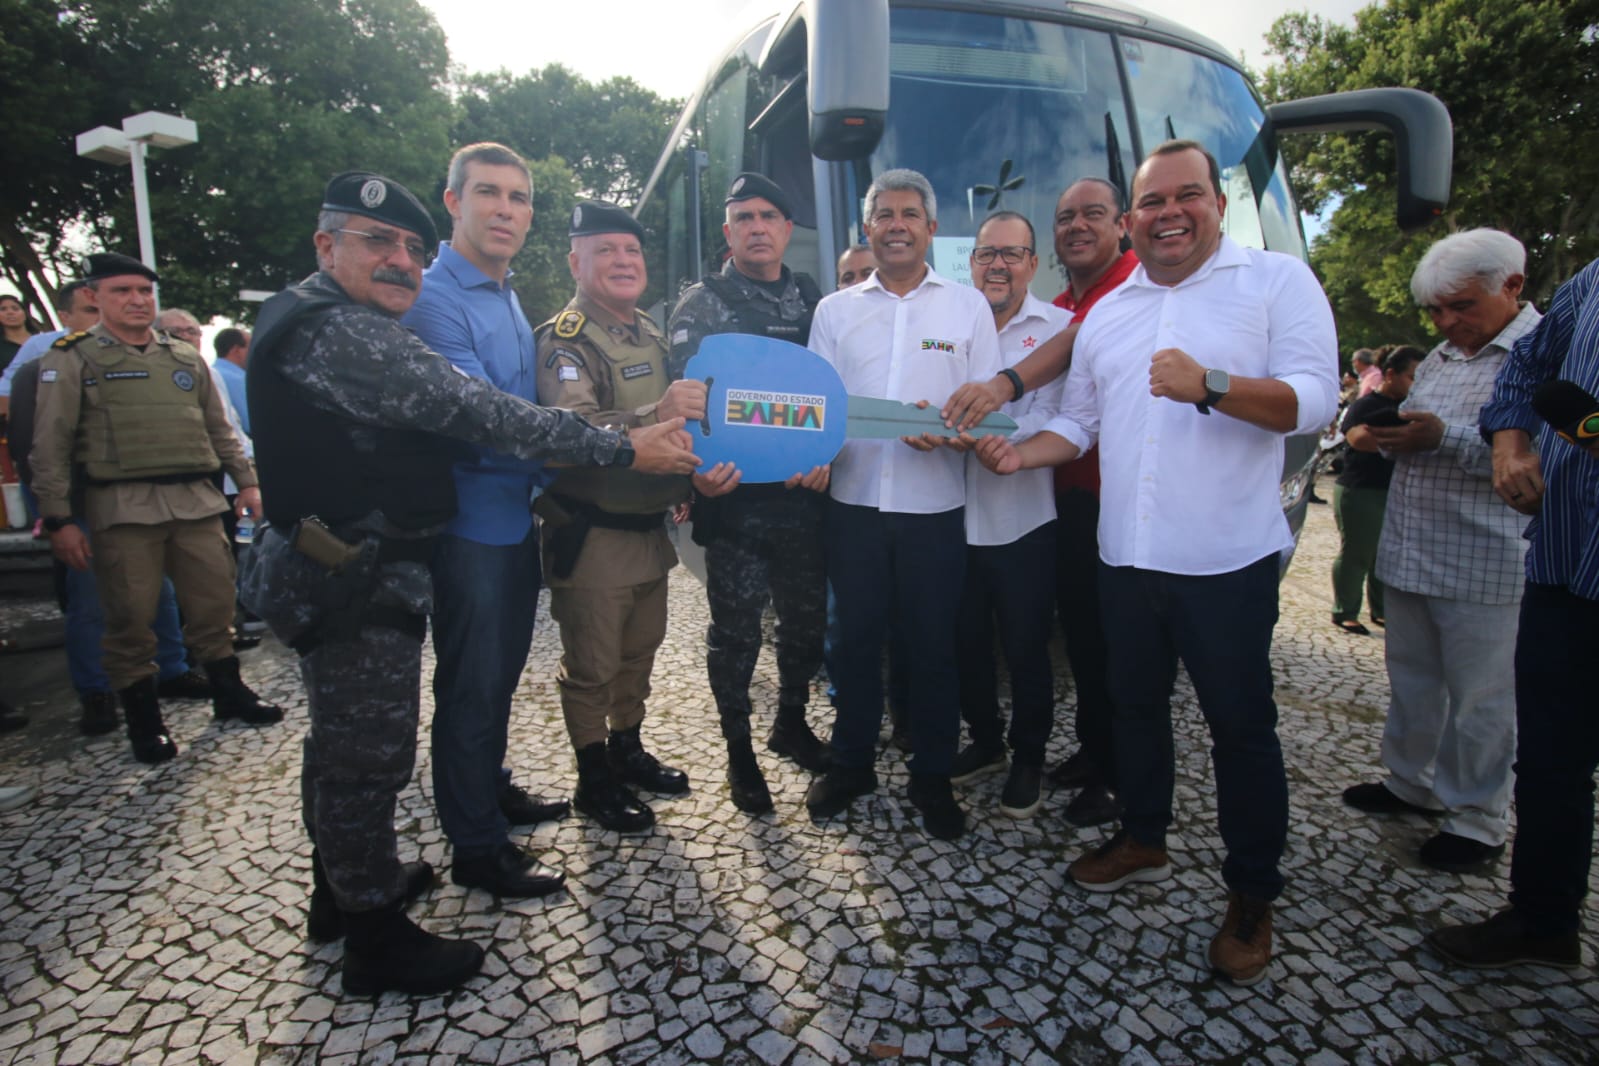 Autoridades do estado da Bahia reunidos para entrega de equipamentos para segurança pública 